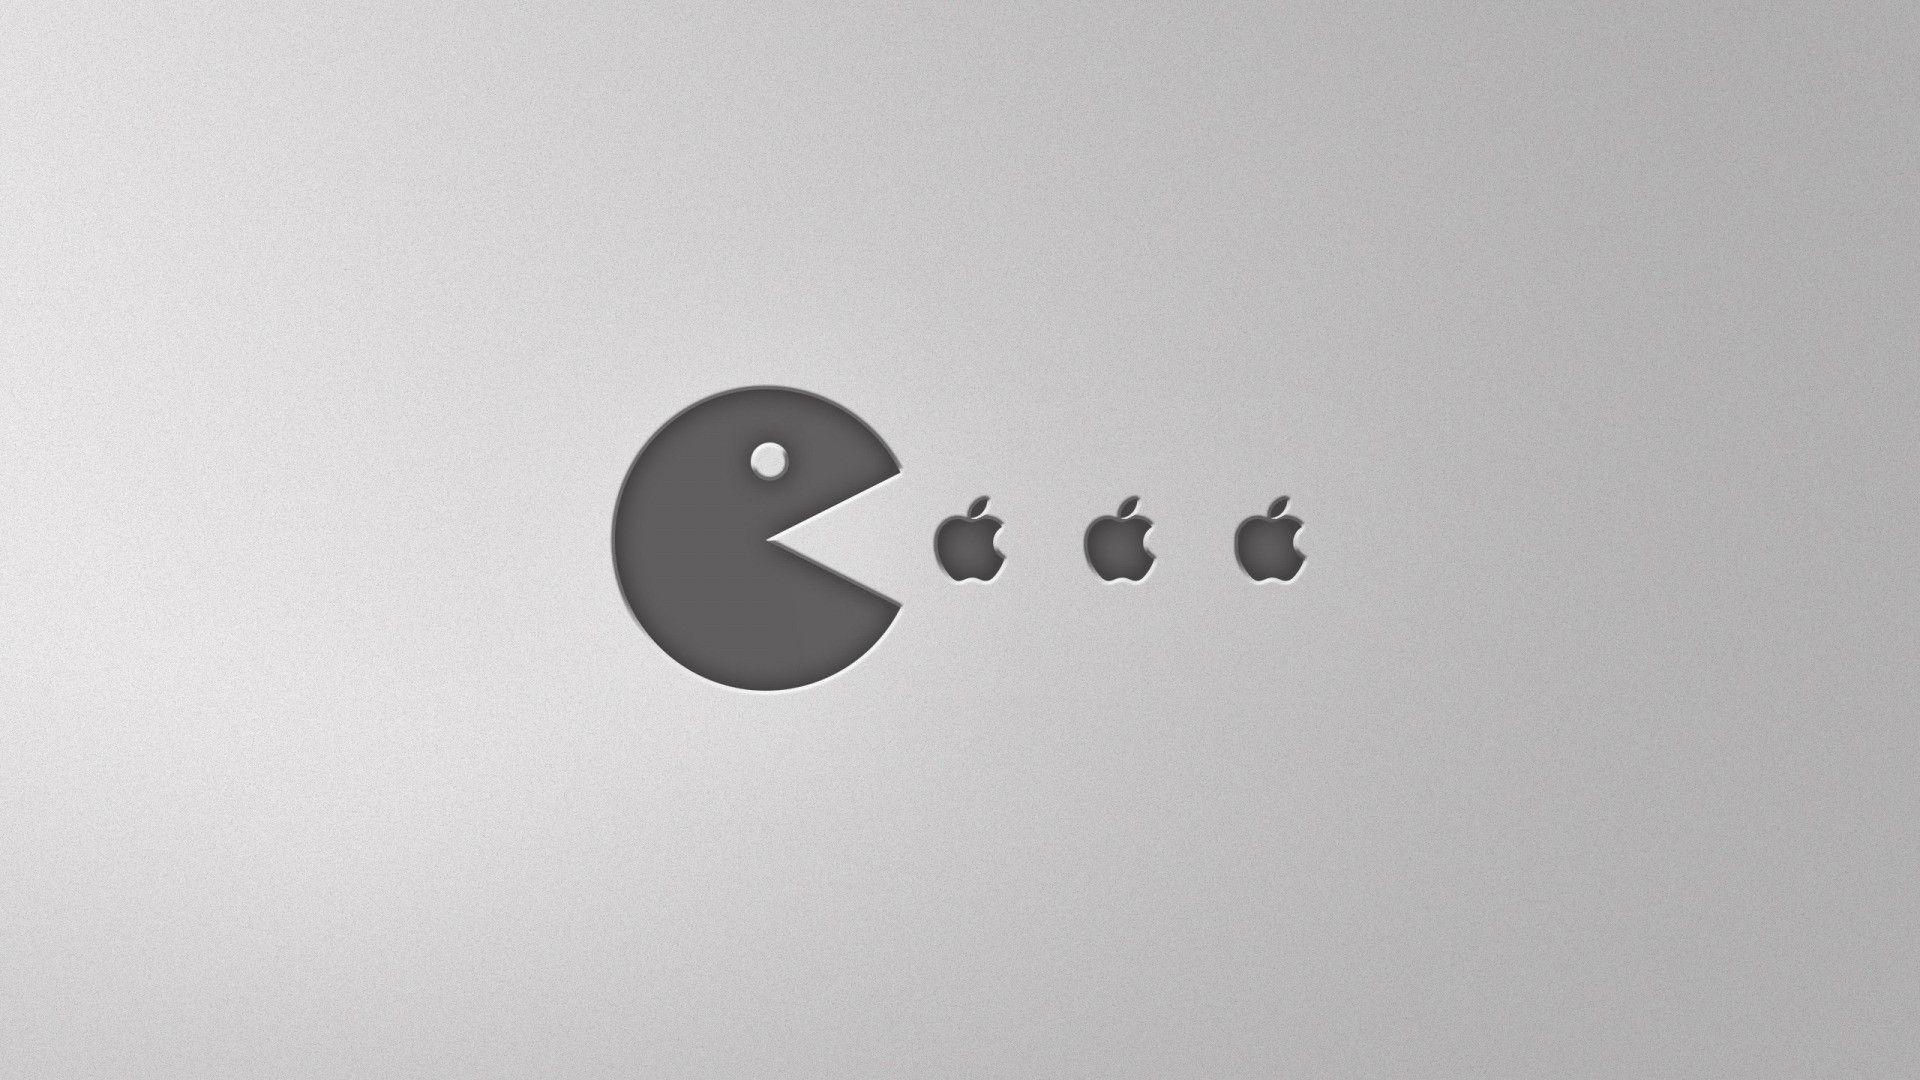 Pacman Mac wallpaper HD for iMac, Macbook